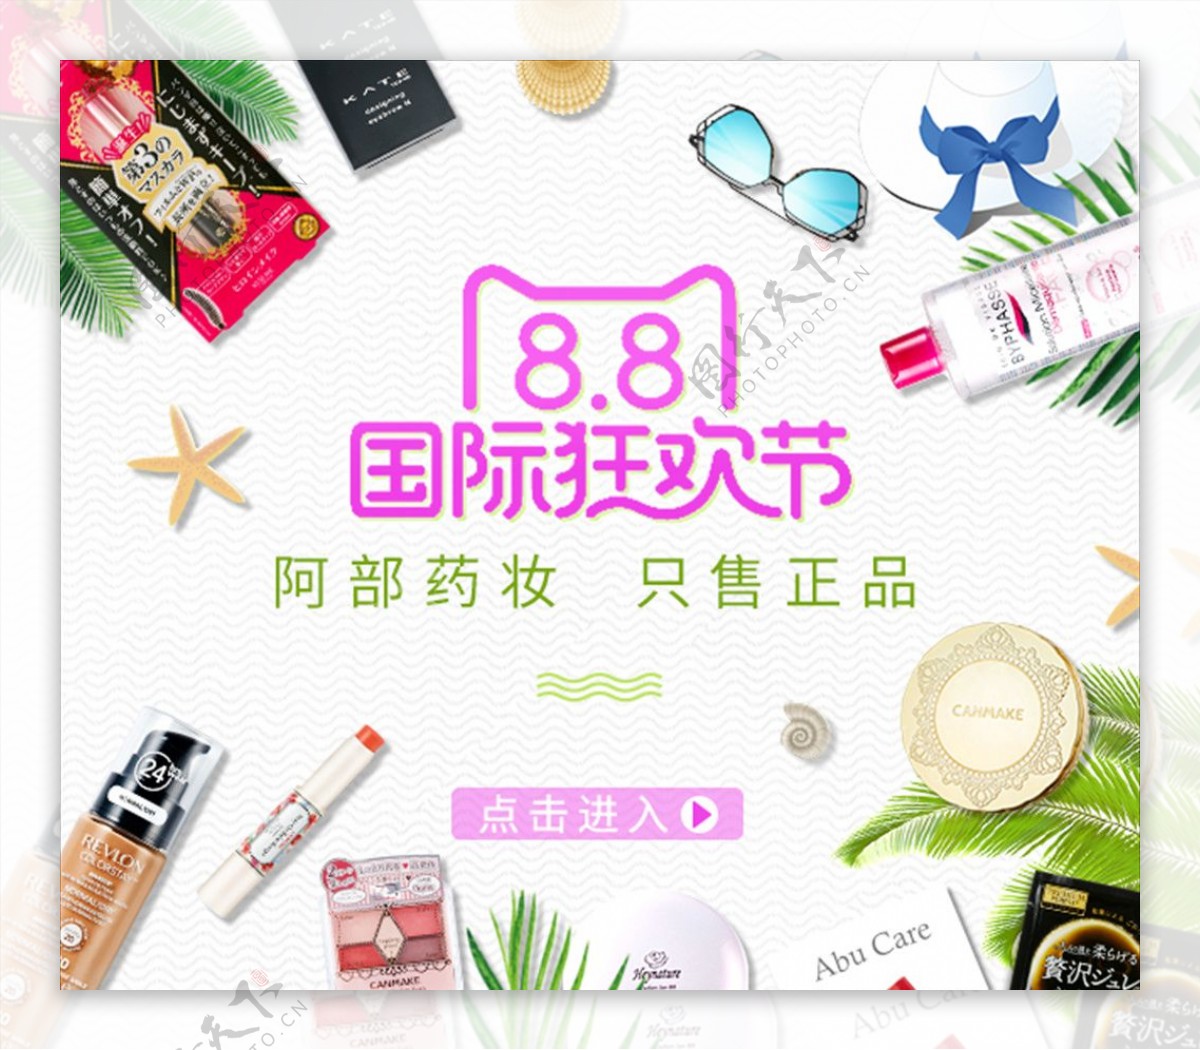 天猫88国际狂欢节美妆活动海报